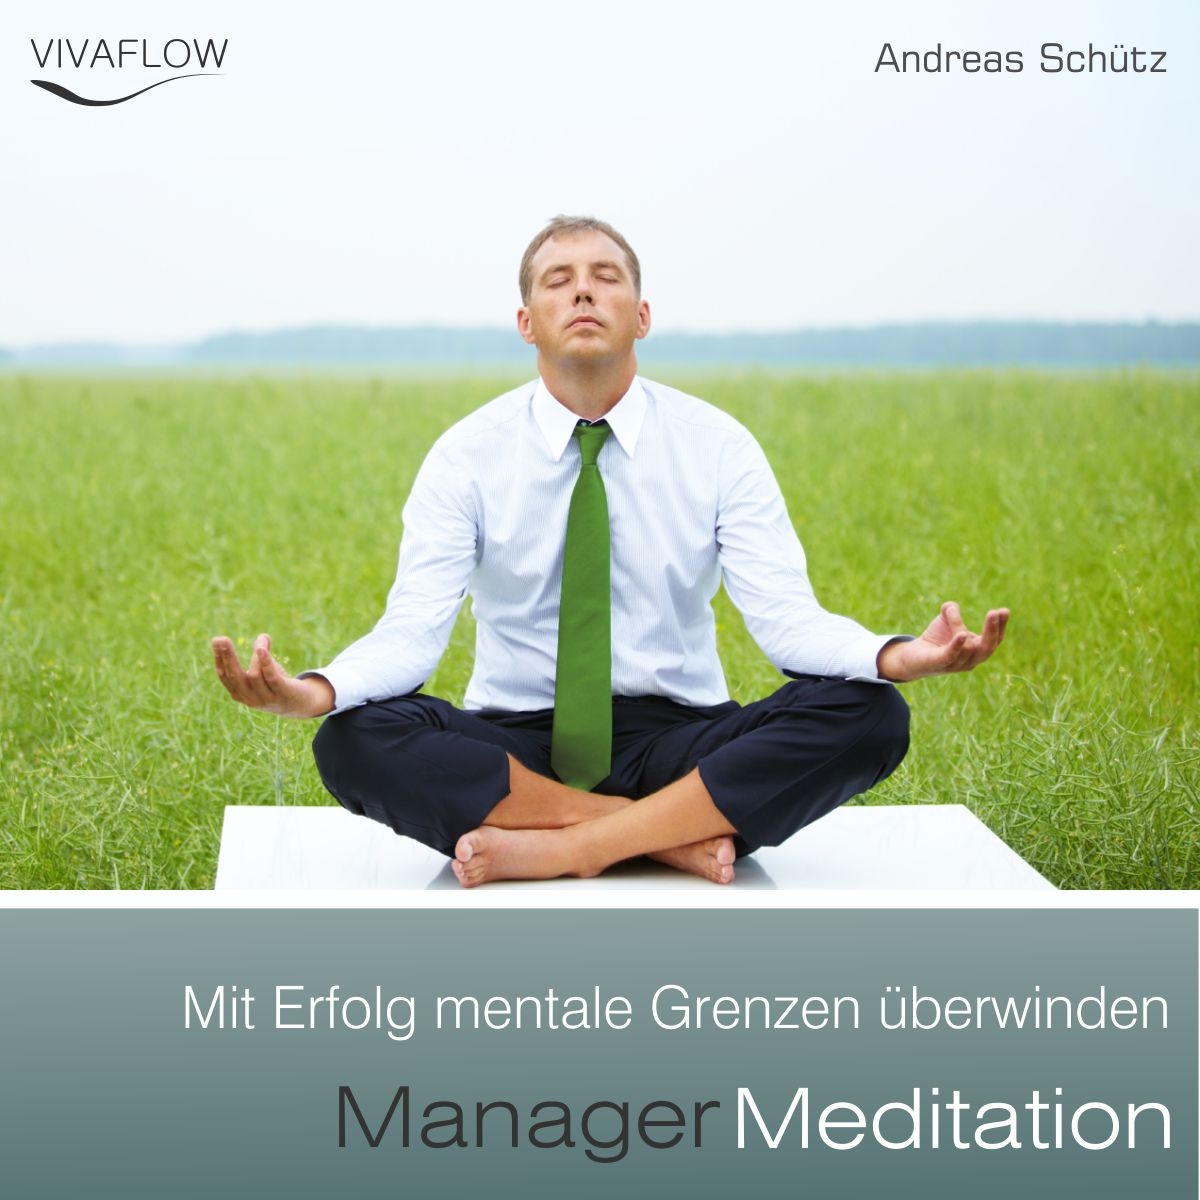 Manager Meditation - Mentale Grenzen überwinden